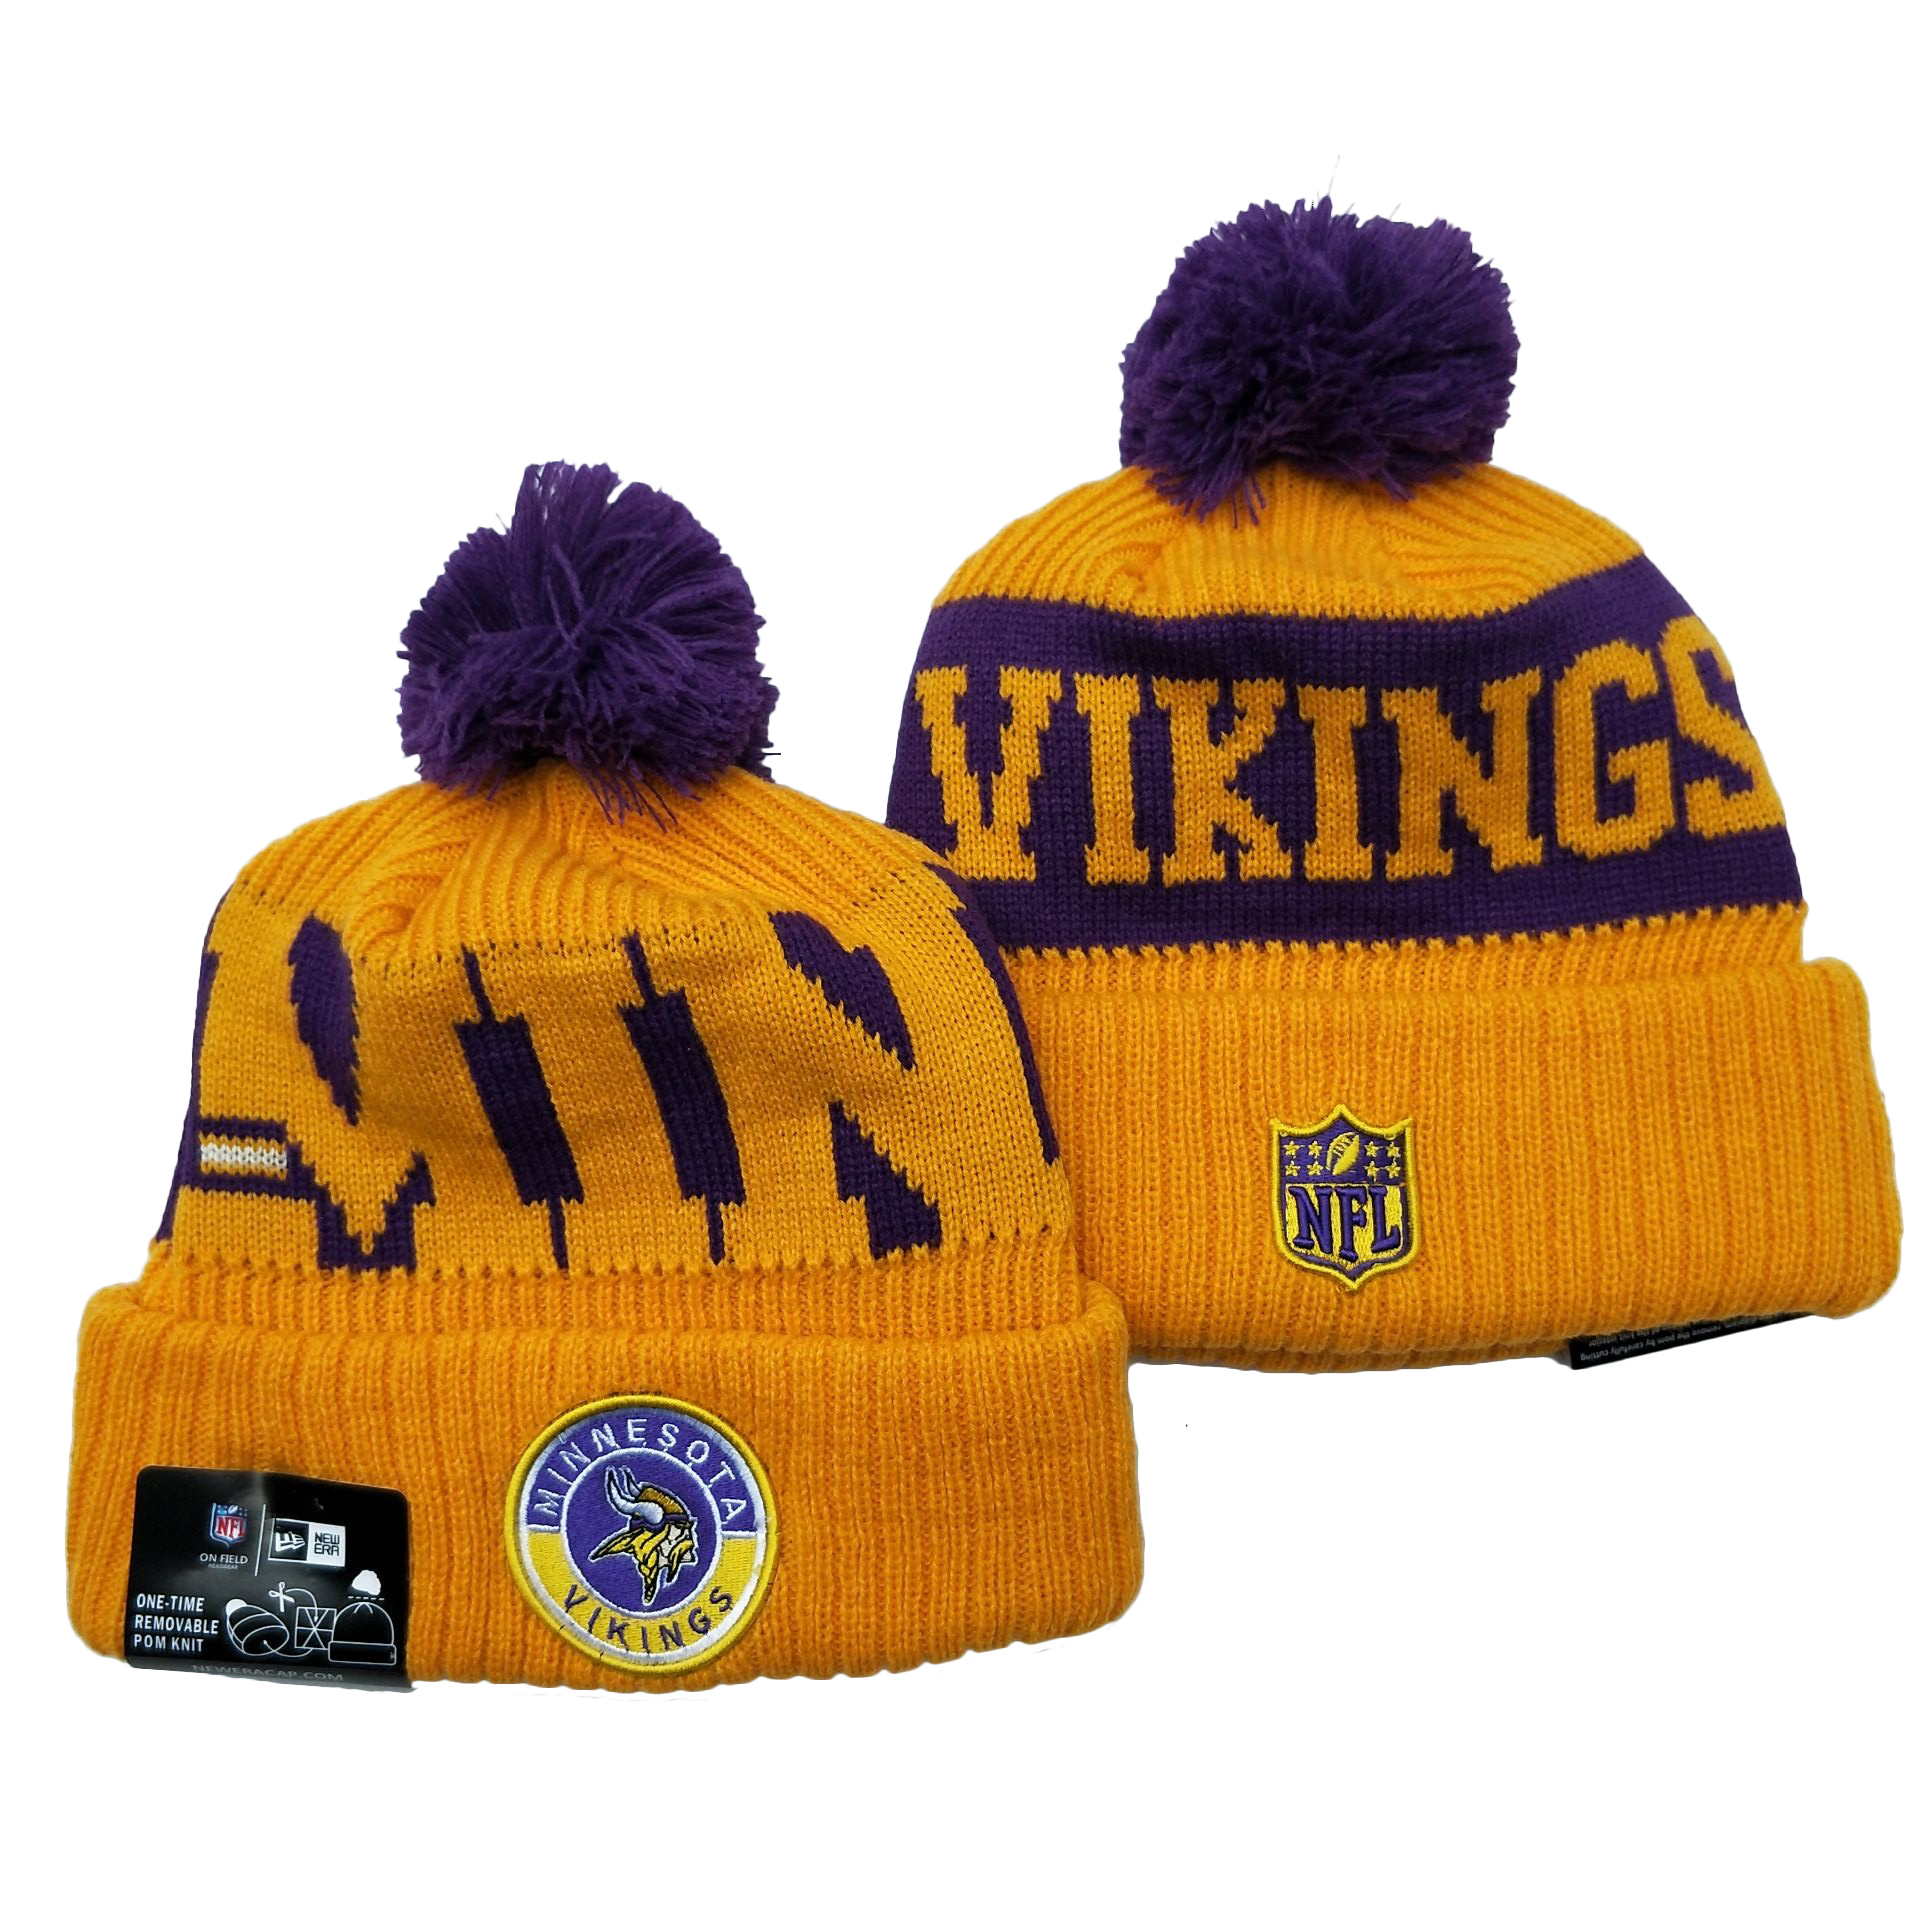 Vikings Team Logo Yellow 2020 NFL Sideline Pom Cuffed Knit Hat YD